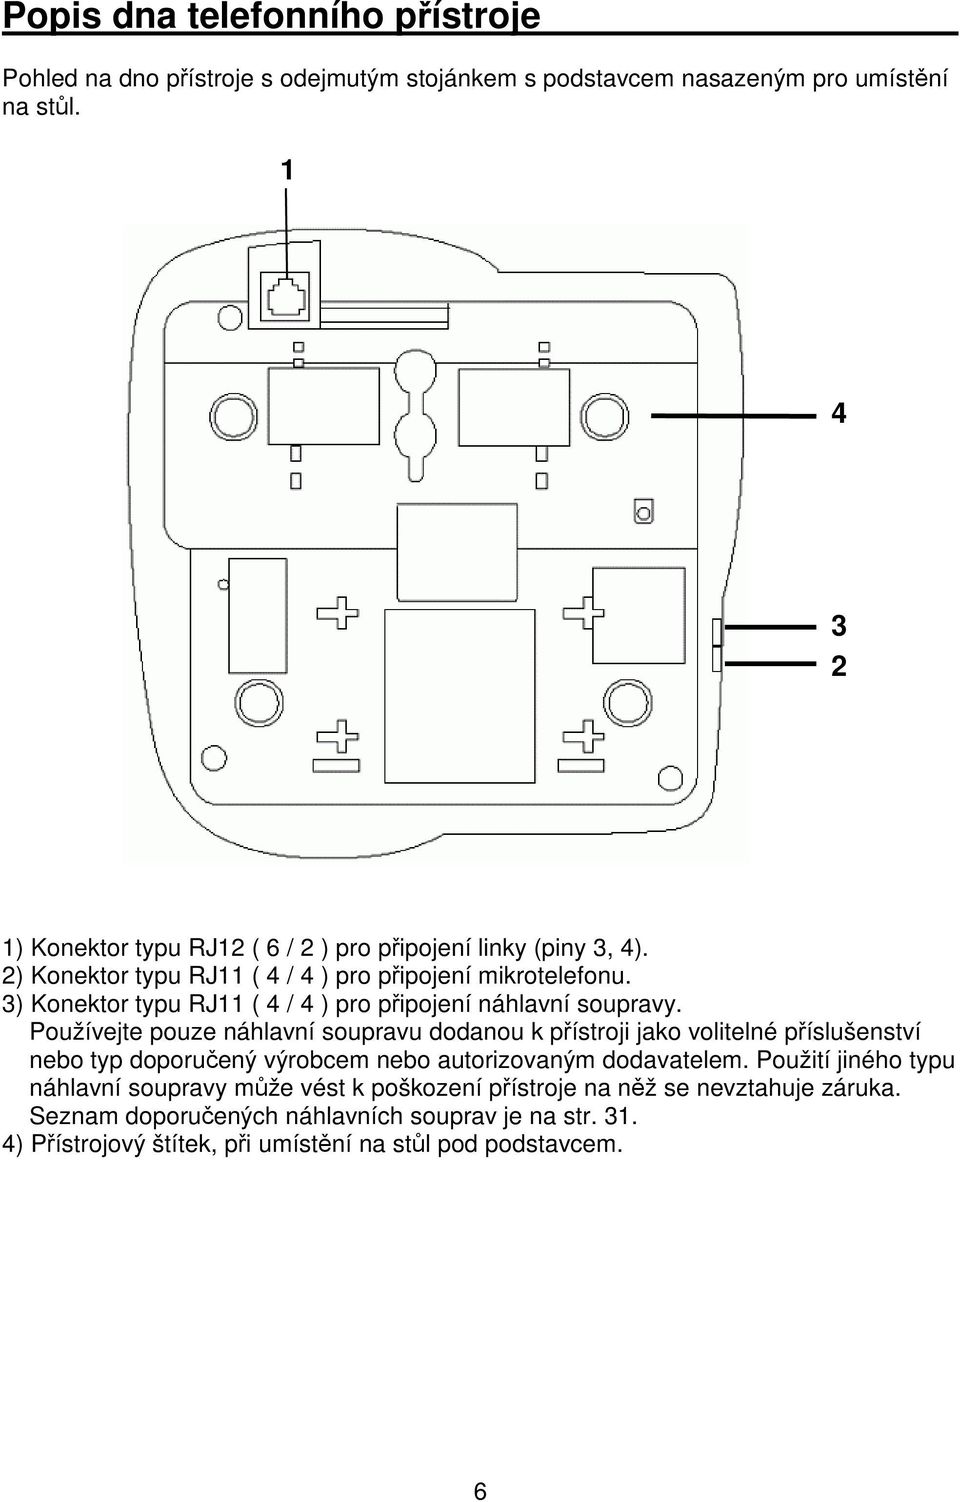 3) Konektor typu RJ11 ( 4 / 4 ) pro pipojení náhlavní soupravy.